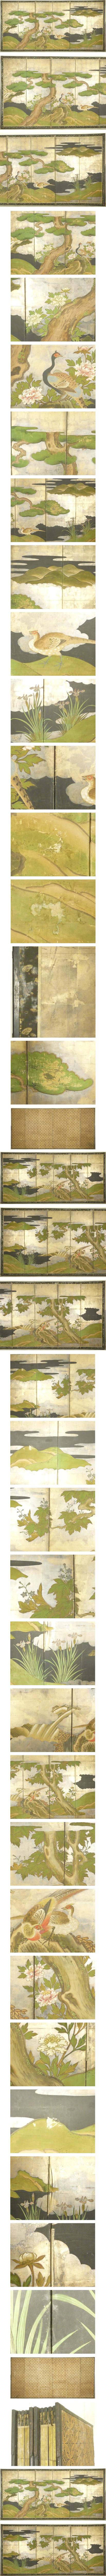 【格安購入】金台肉筆 松に雉図 屏風 高さ 約172cm 六曲一双 無落款 花鳥図 日本画 花鳥、鳥獣